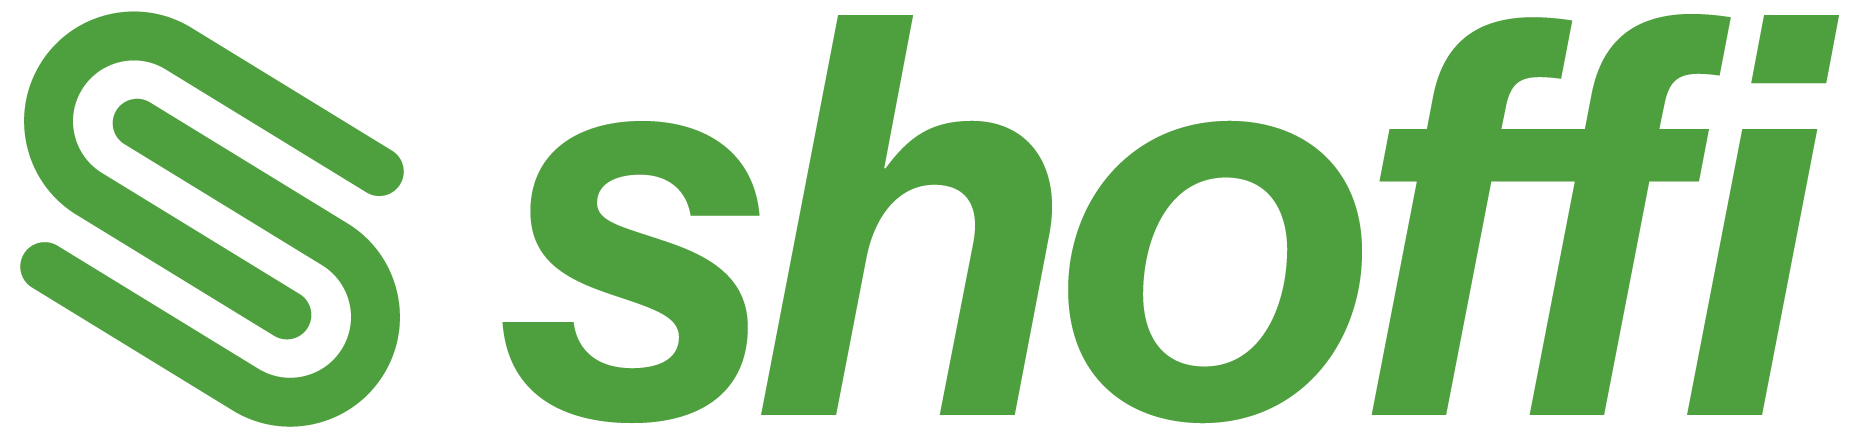 shoffi logo